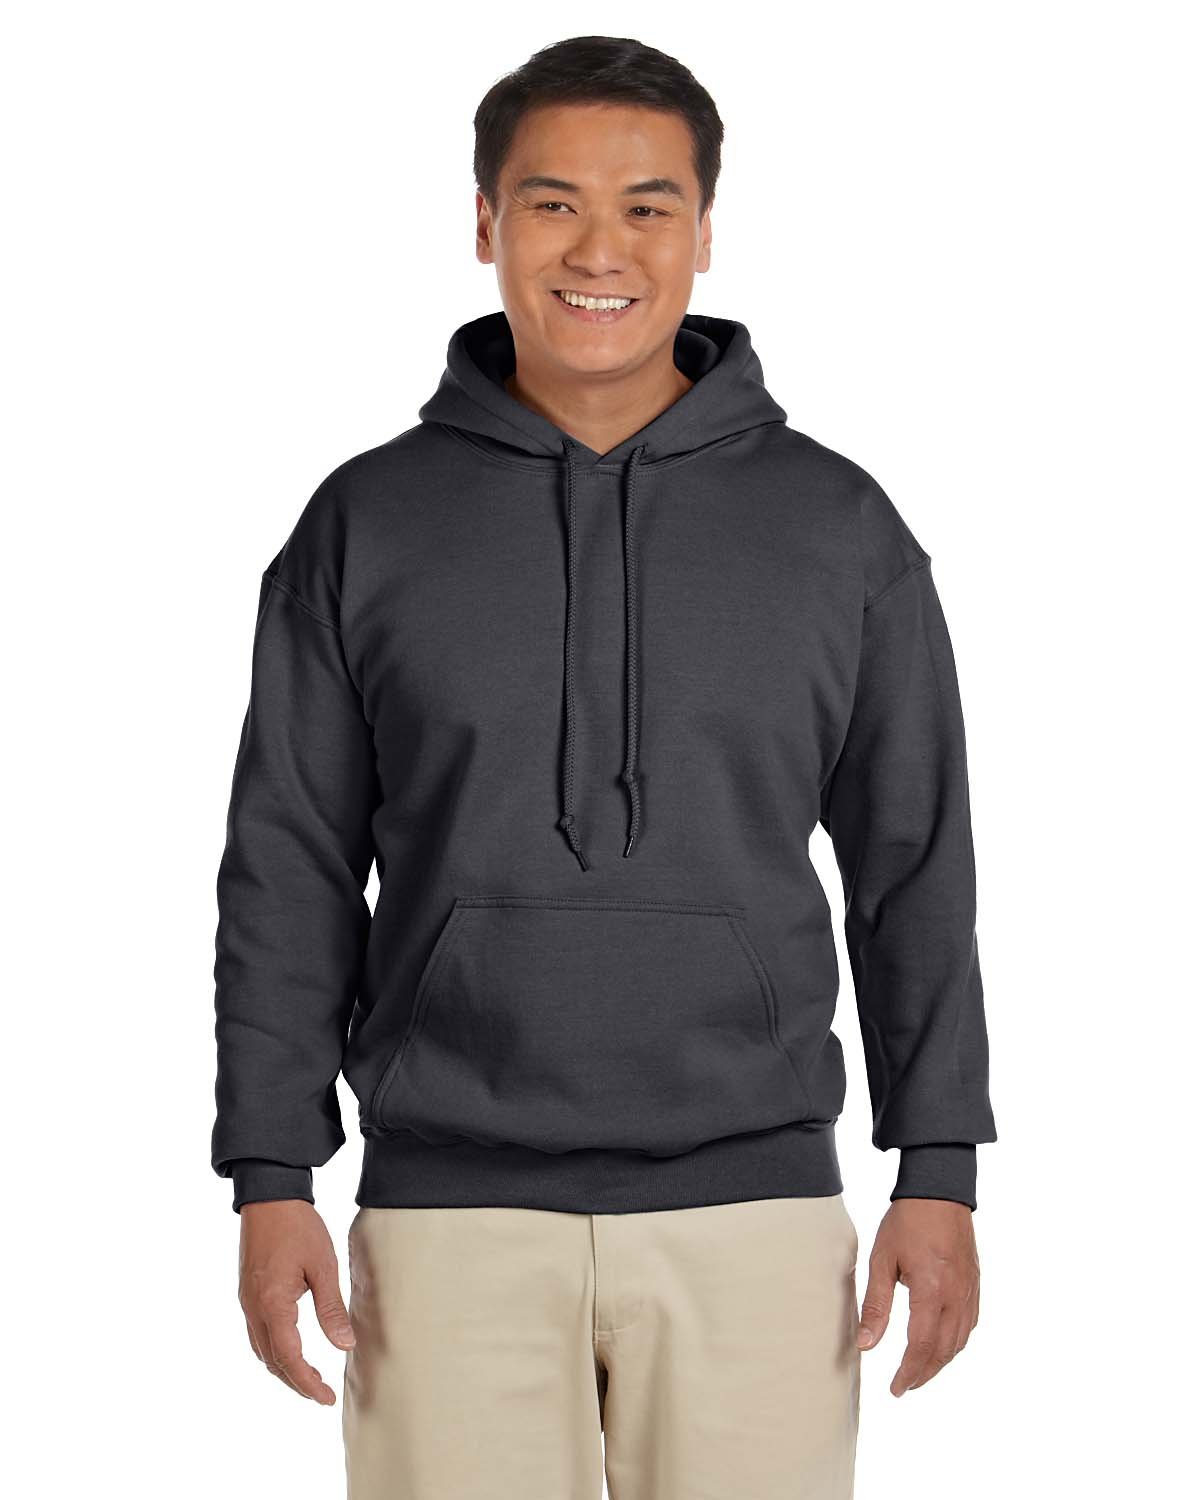 Gildan Adult Fleece Hooded Sweatshirt Style G18500 